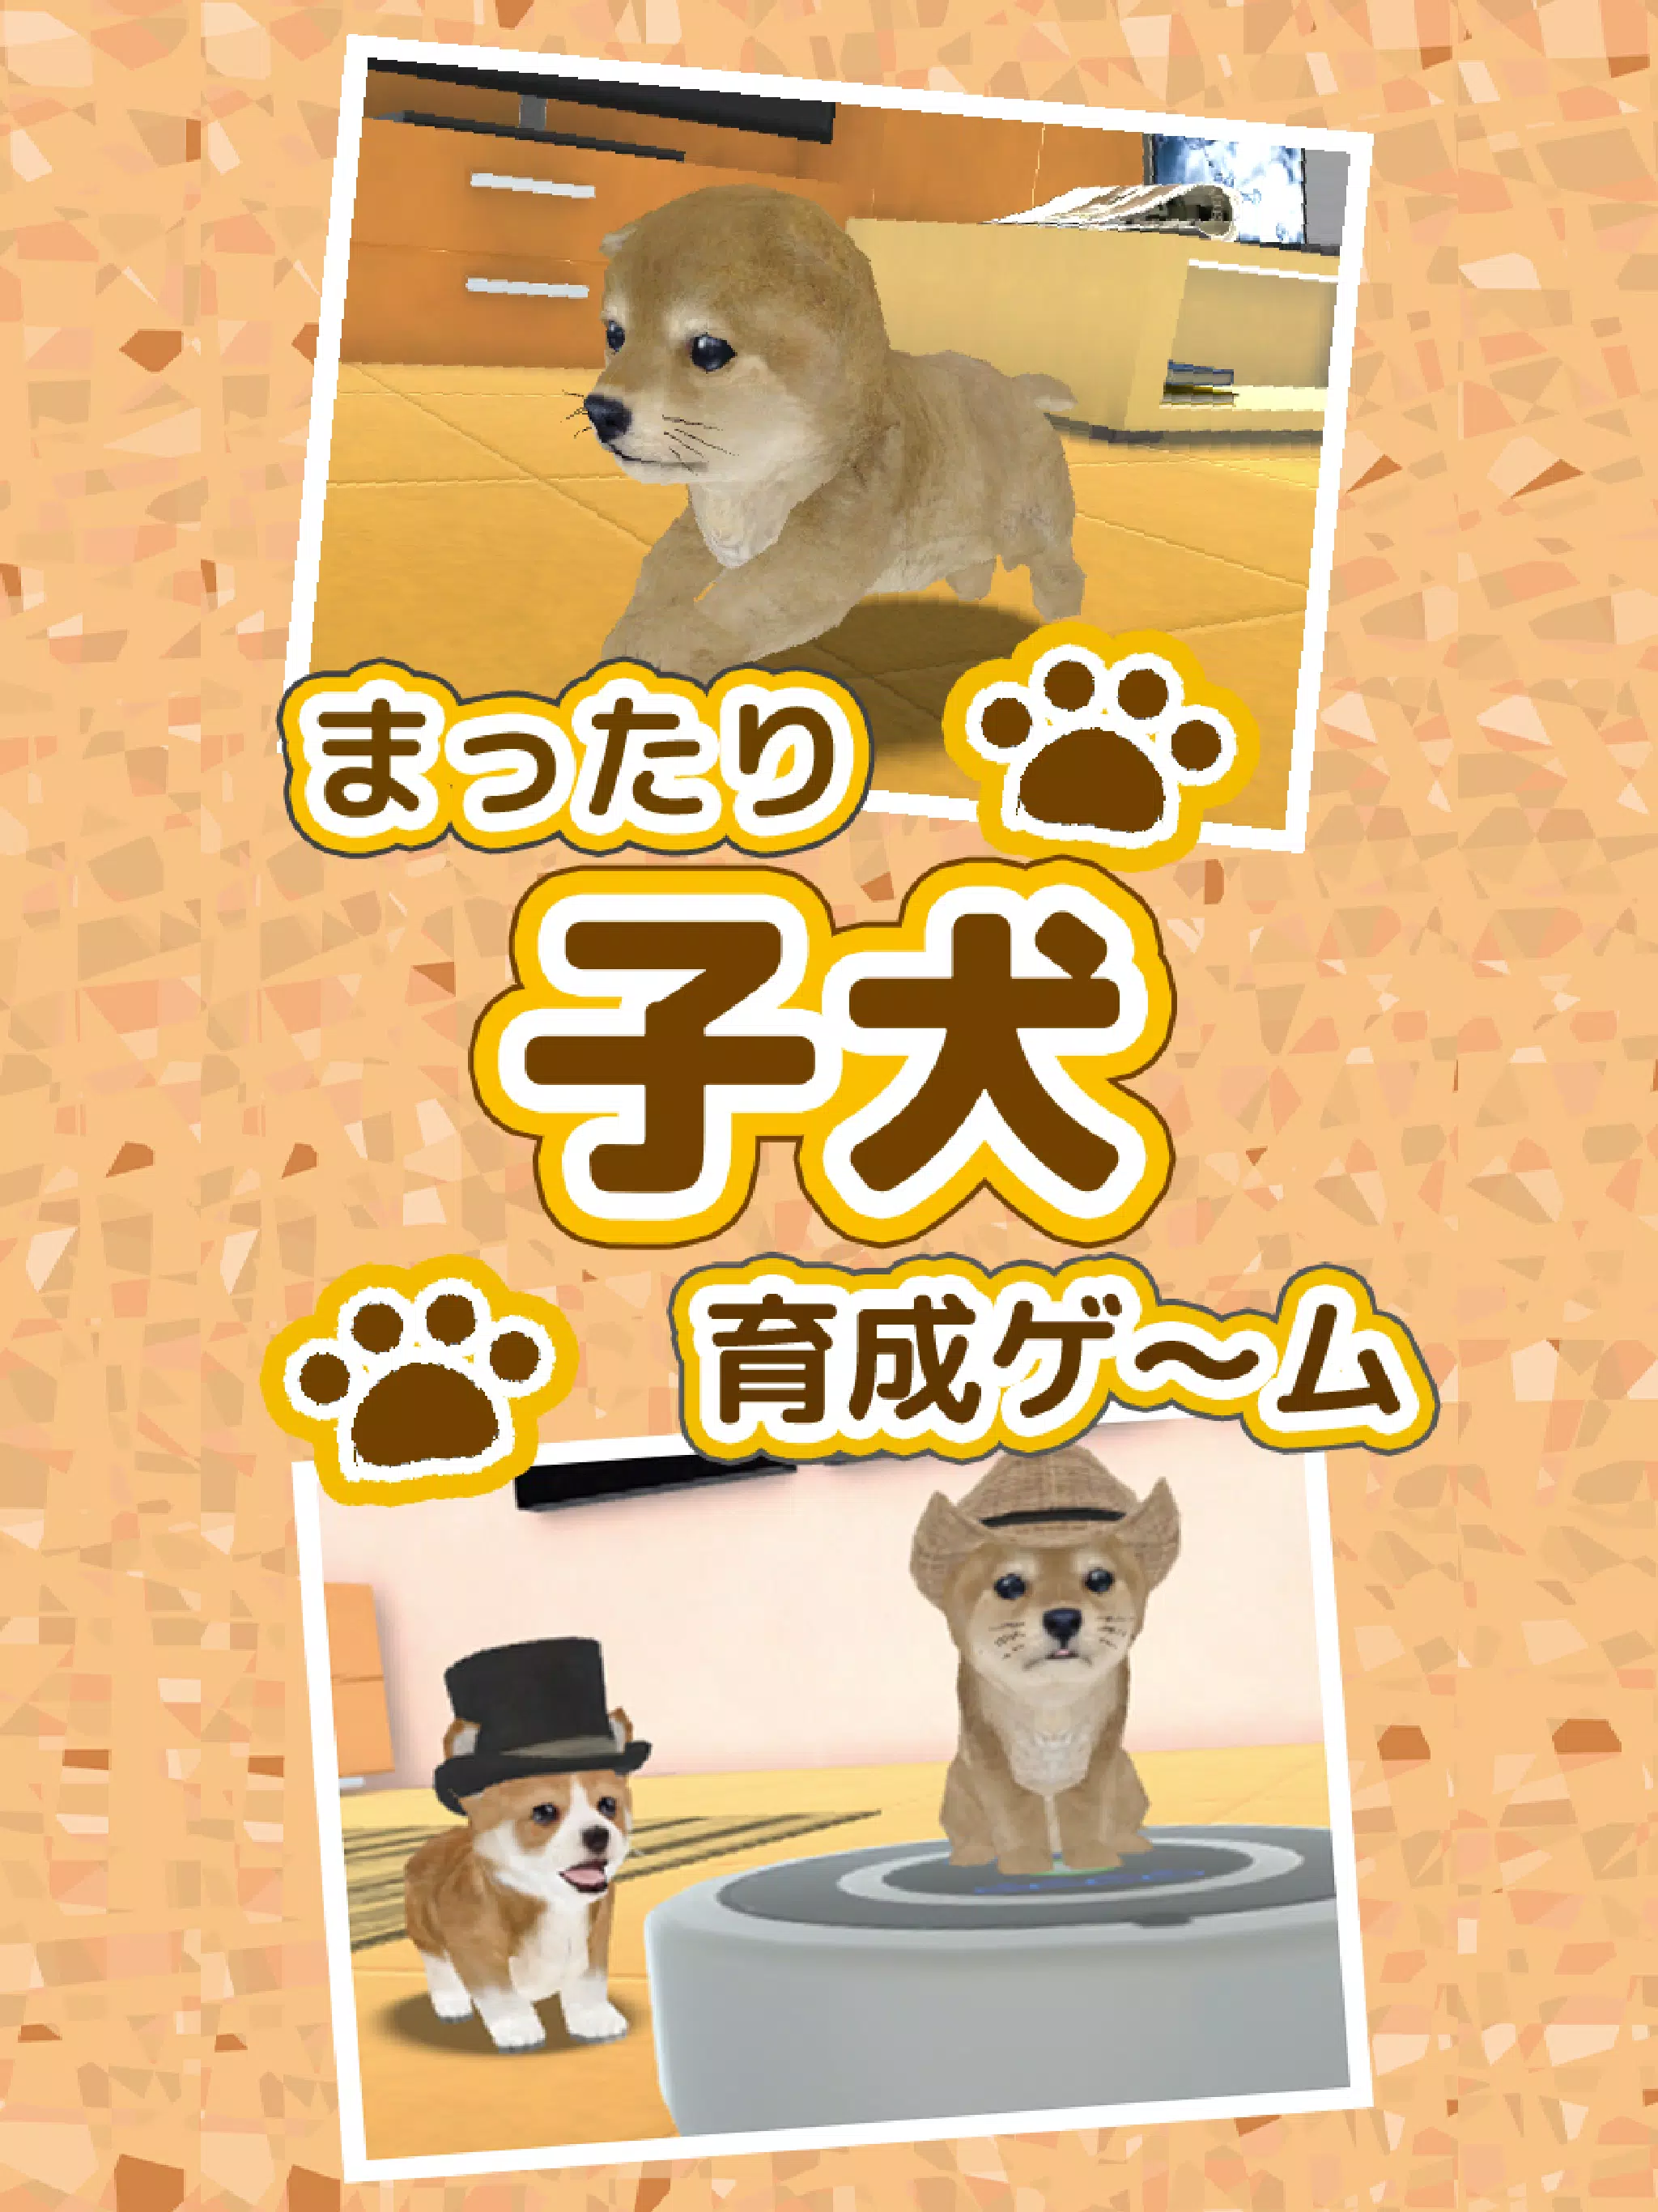 子犬のかわいい育成ゲーム 完全無料の可愛い犬育成アプリ For Android Apk Download